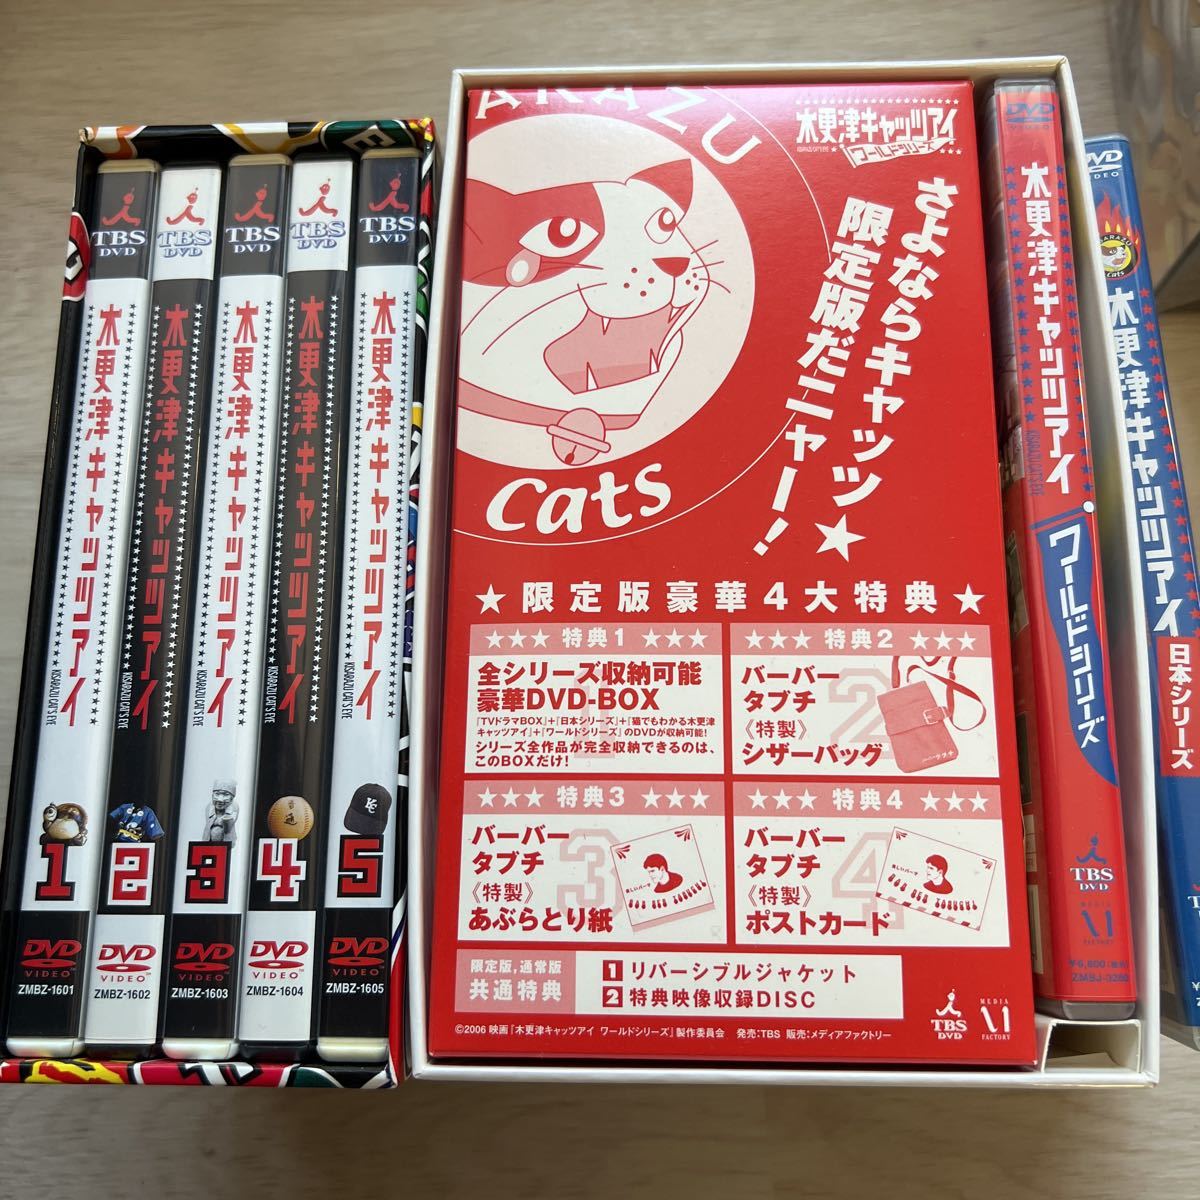 木更津キャッツアイ BOX付全5巻DVDセット〈5枚組〉+日本シリーズ+CD